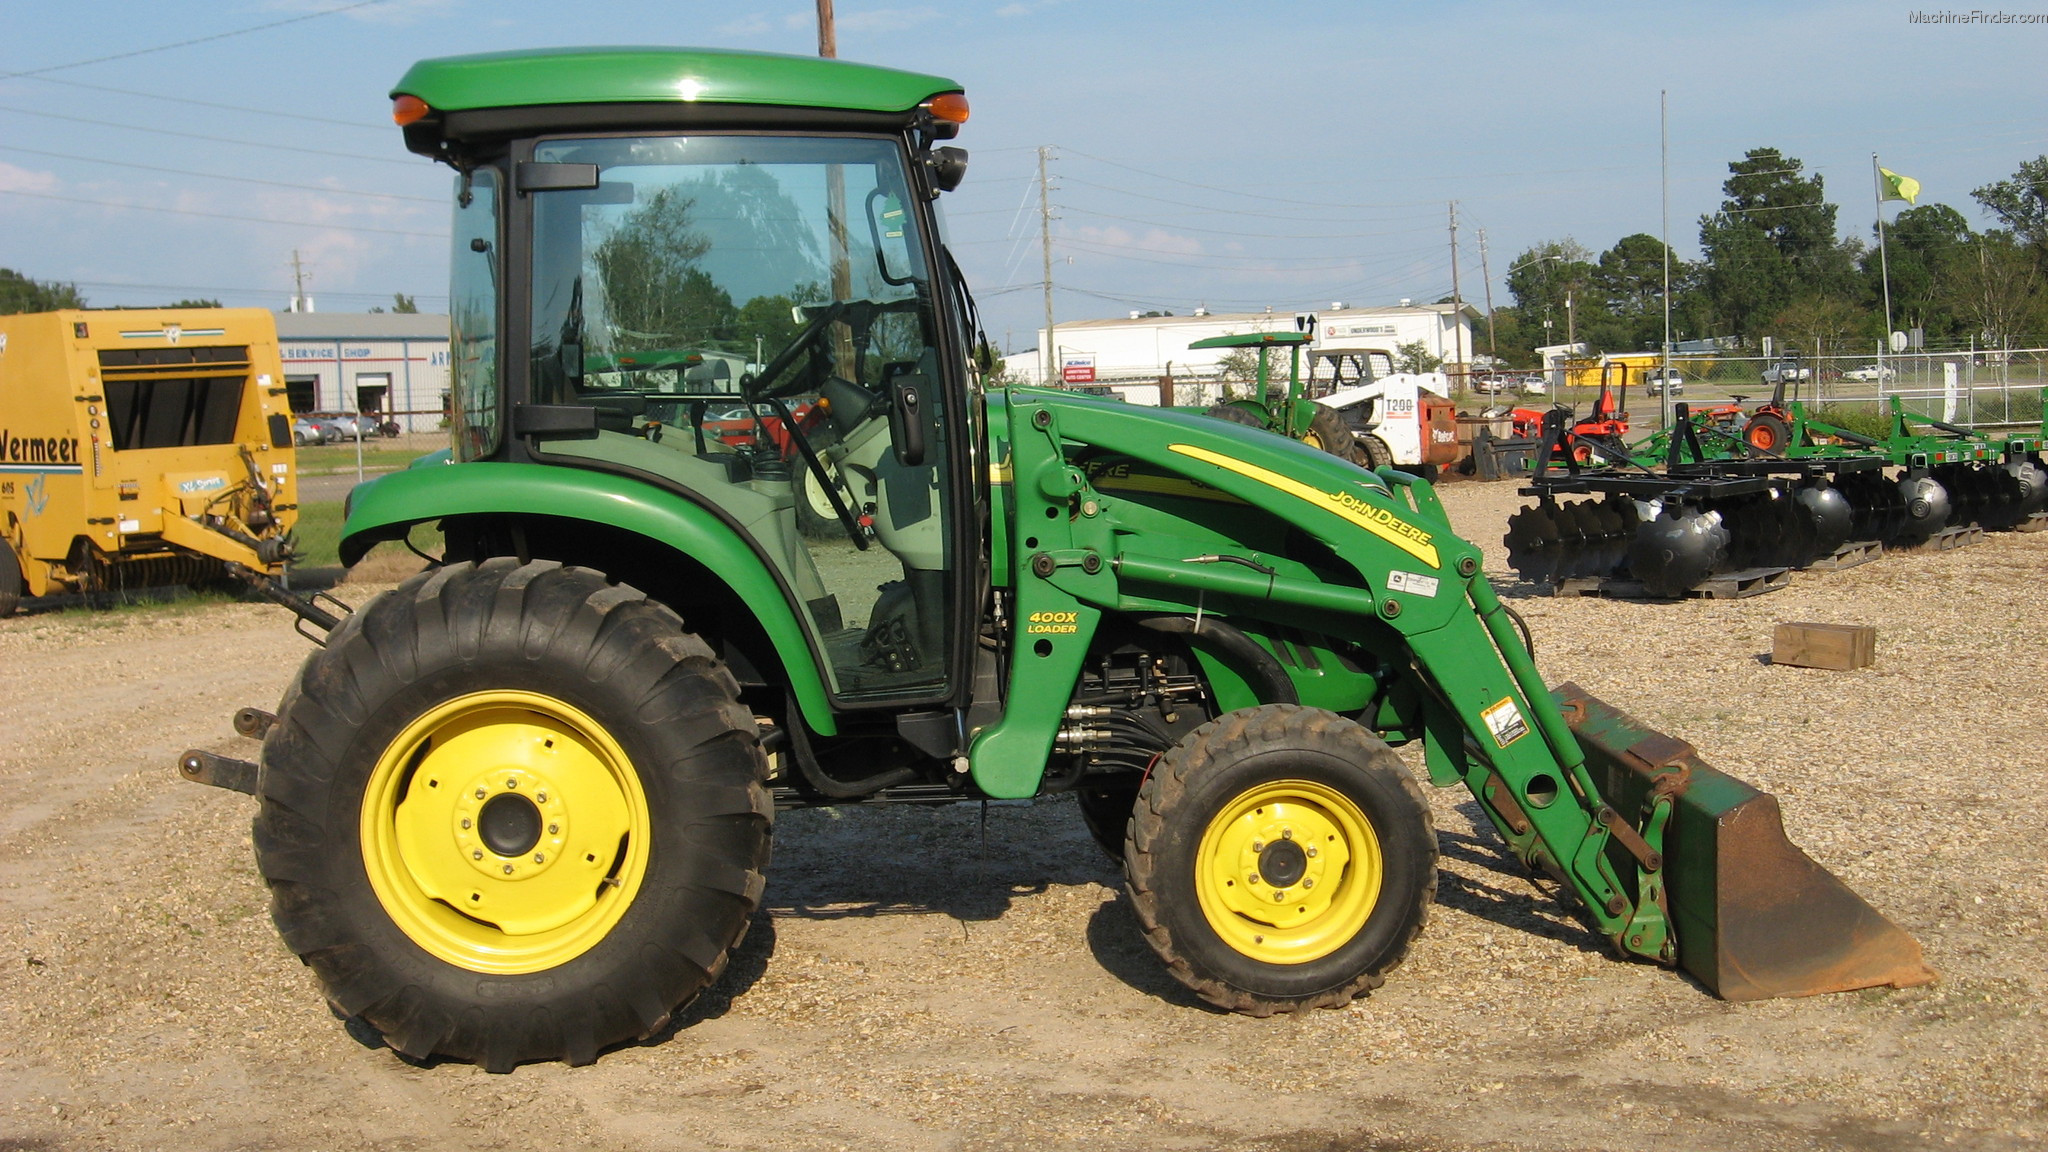 2010 John Deere 4520 Tractors - Compact (1-40hp.) - John Deere ...